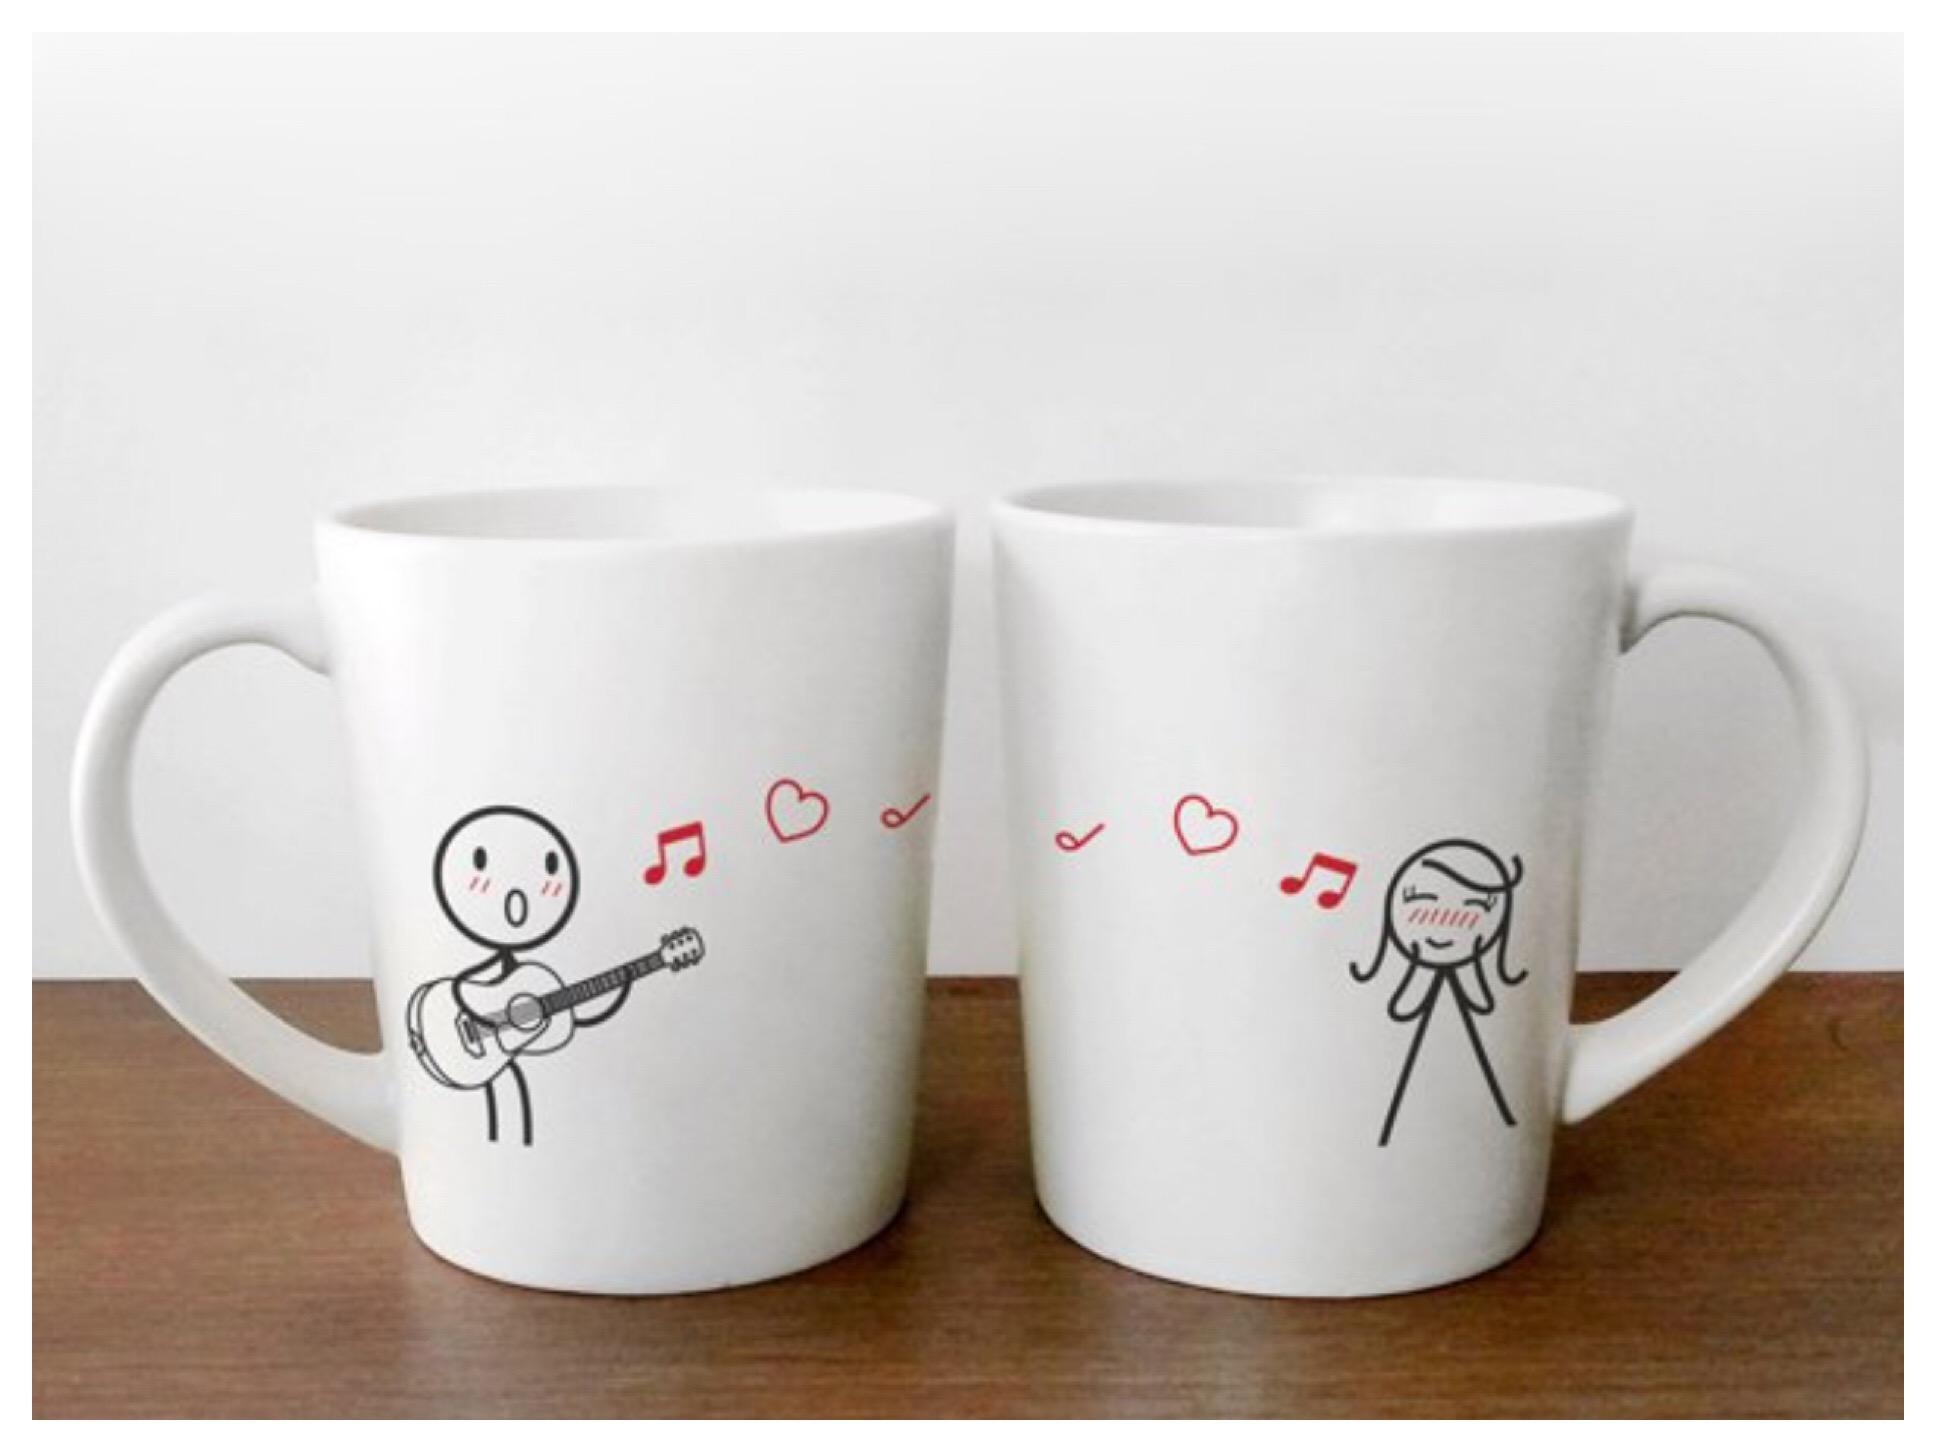 Love Me Tender 
#HisAndHers 
Coffee Mugs